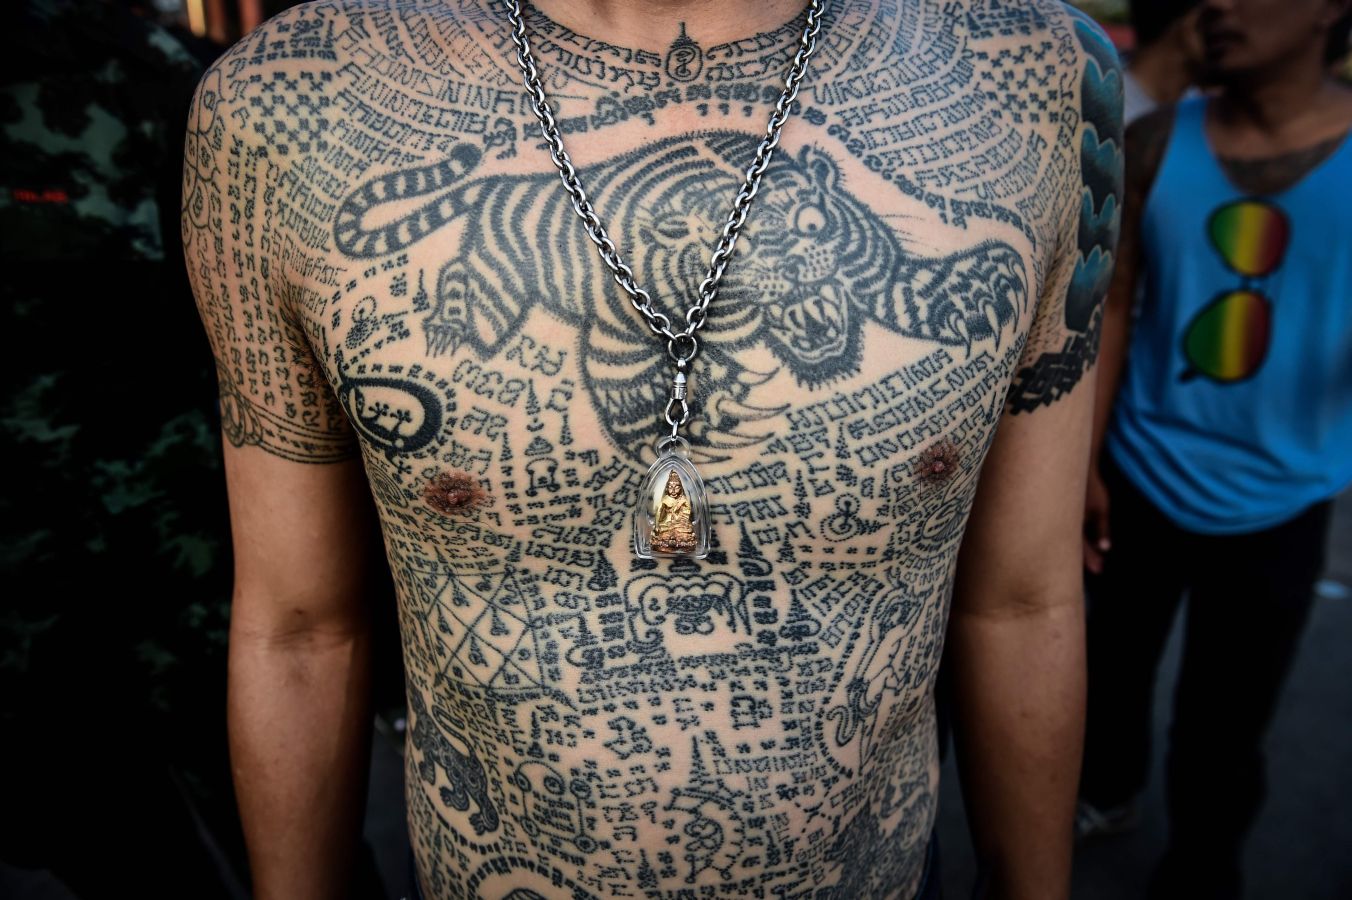 Festival religioso de tatuajes en el monasterio de Wat Bang Phra en Tailandia, donde los devotos creen que sus tatuajes tienen poderes místicos